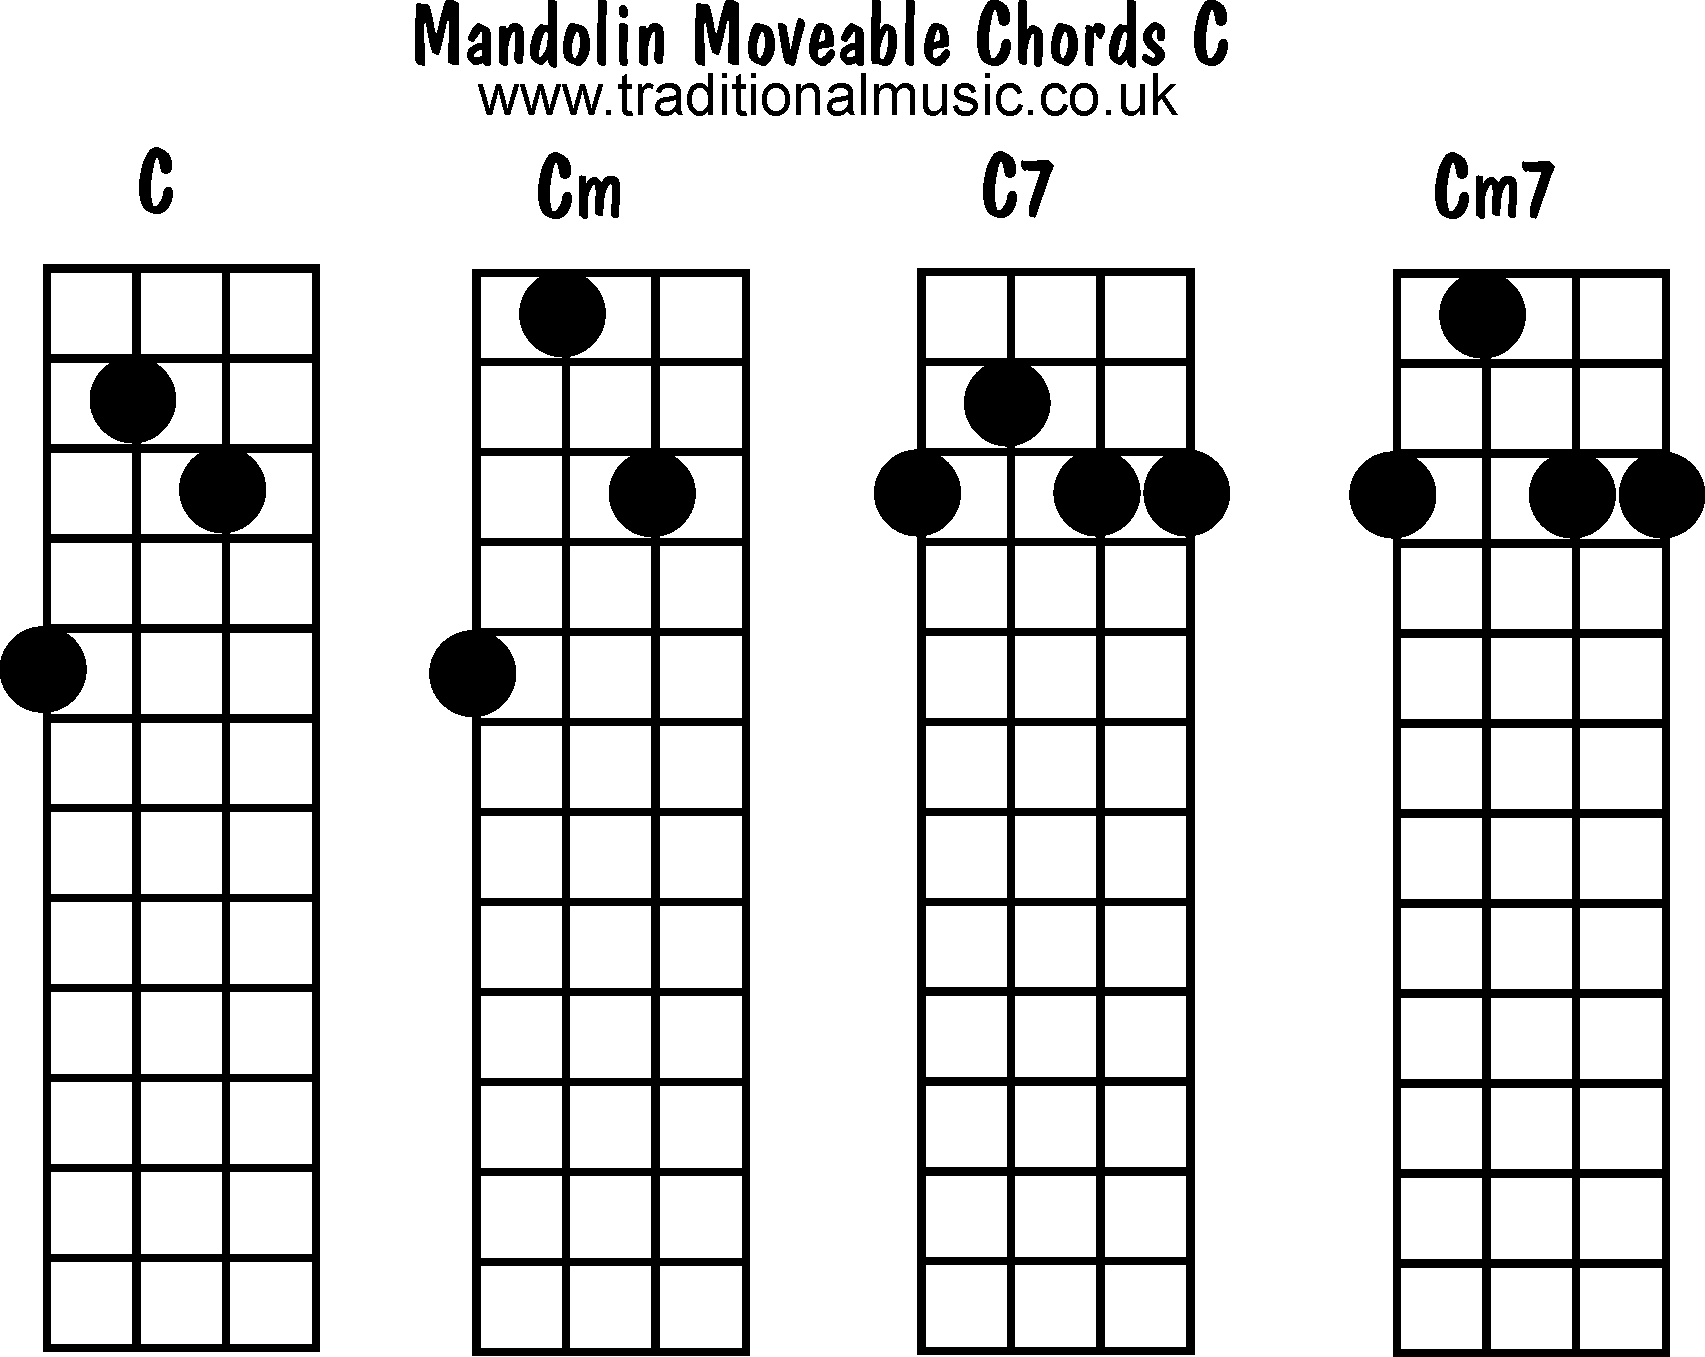 Chords: C, Cm, C7, Cm7.